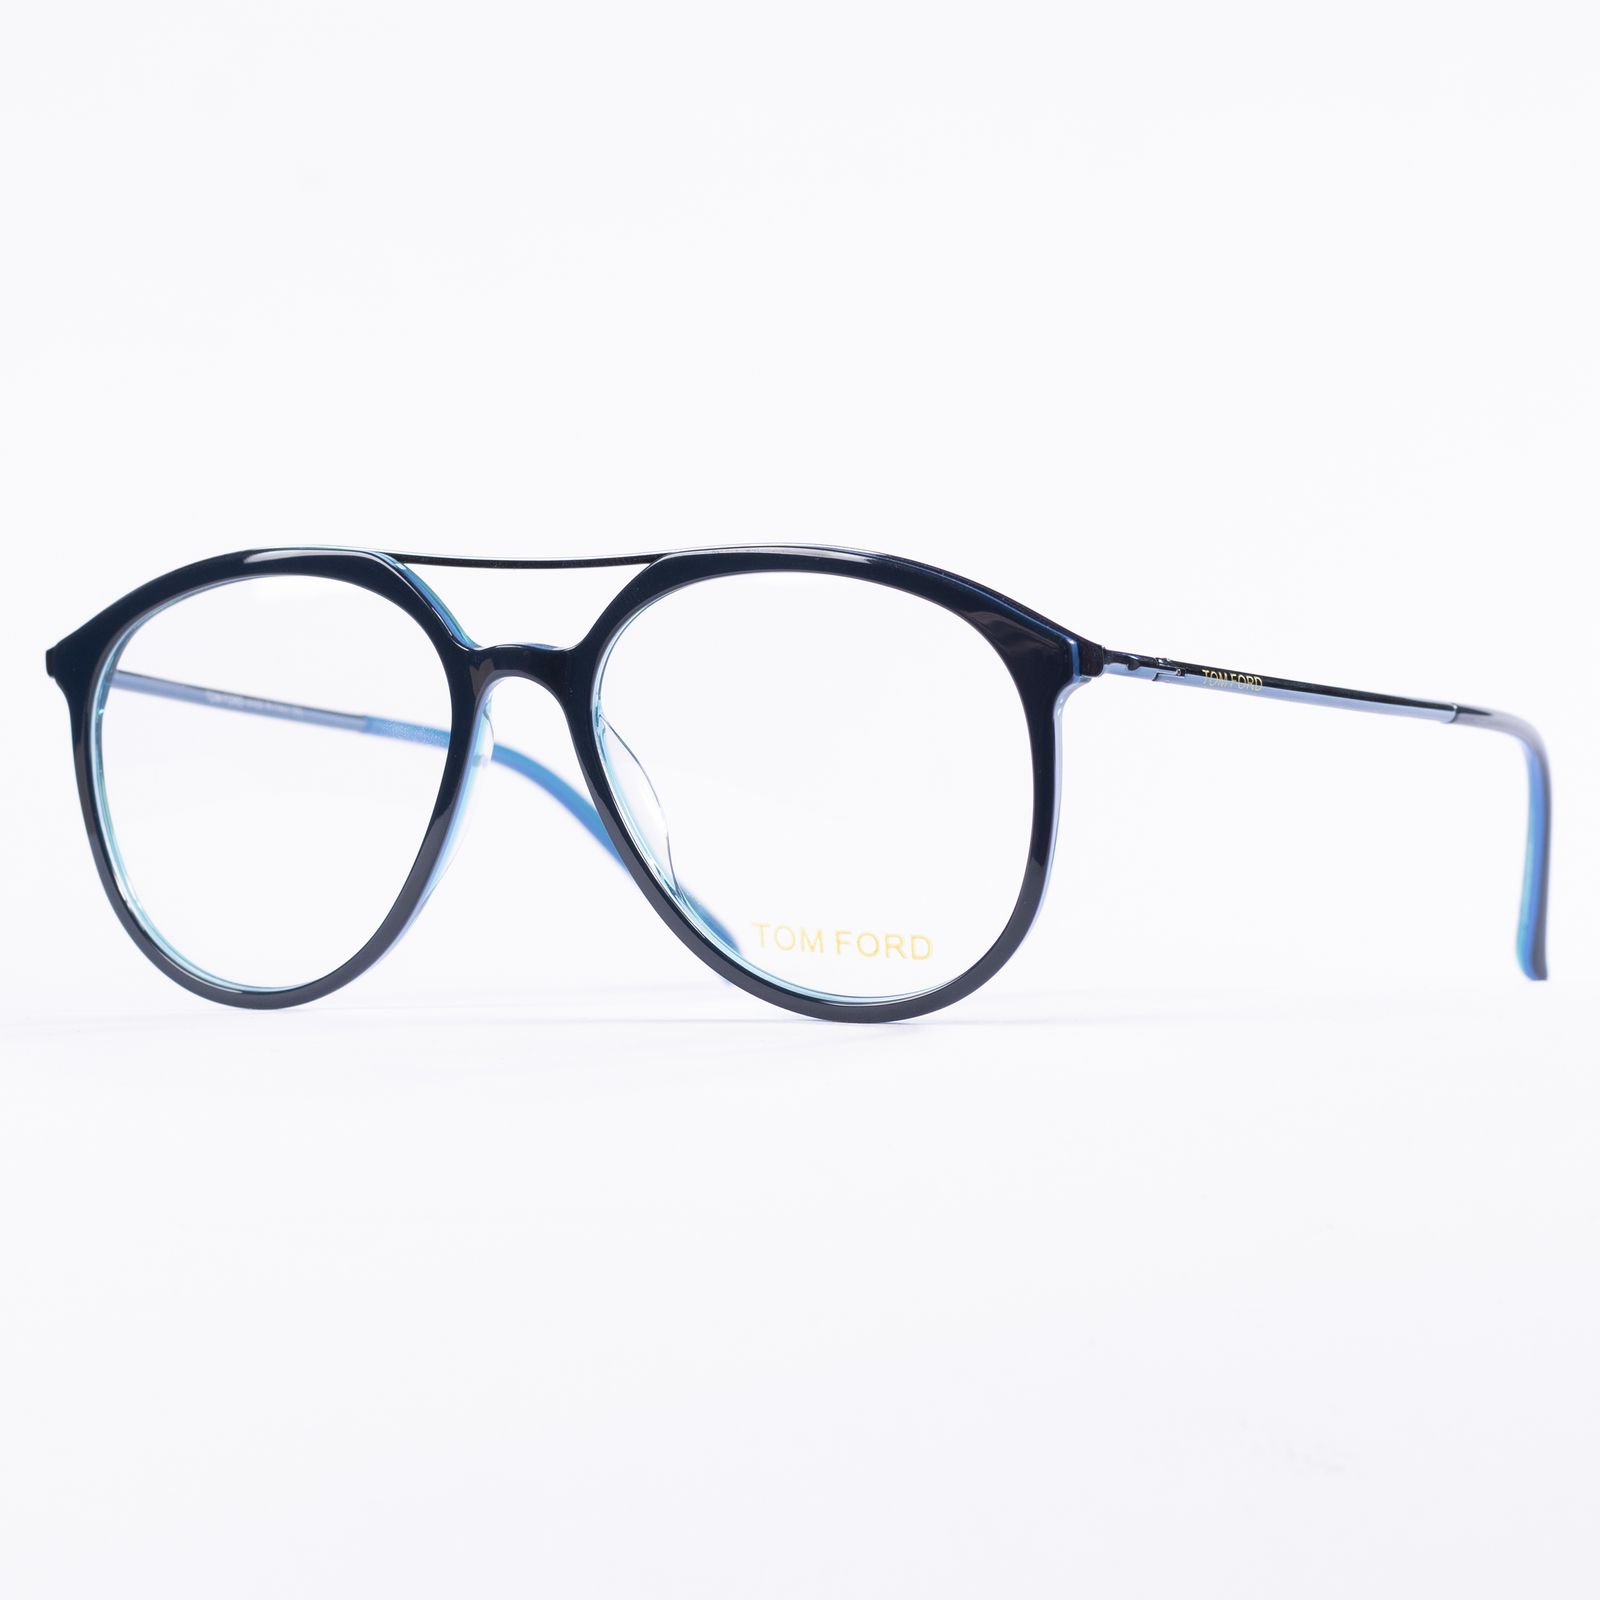 فریم عینک طبی مدل 20115 -  - 4